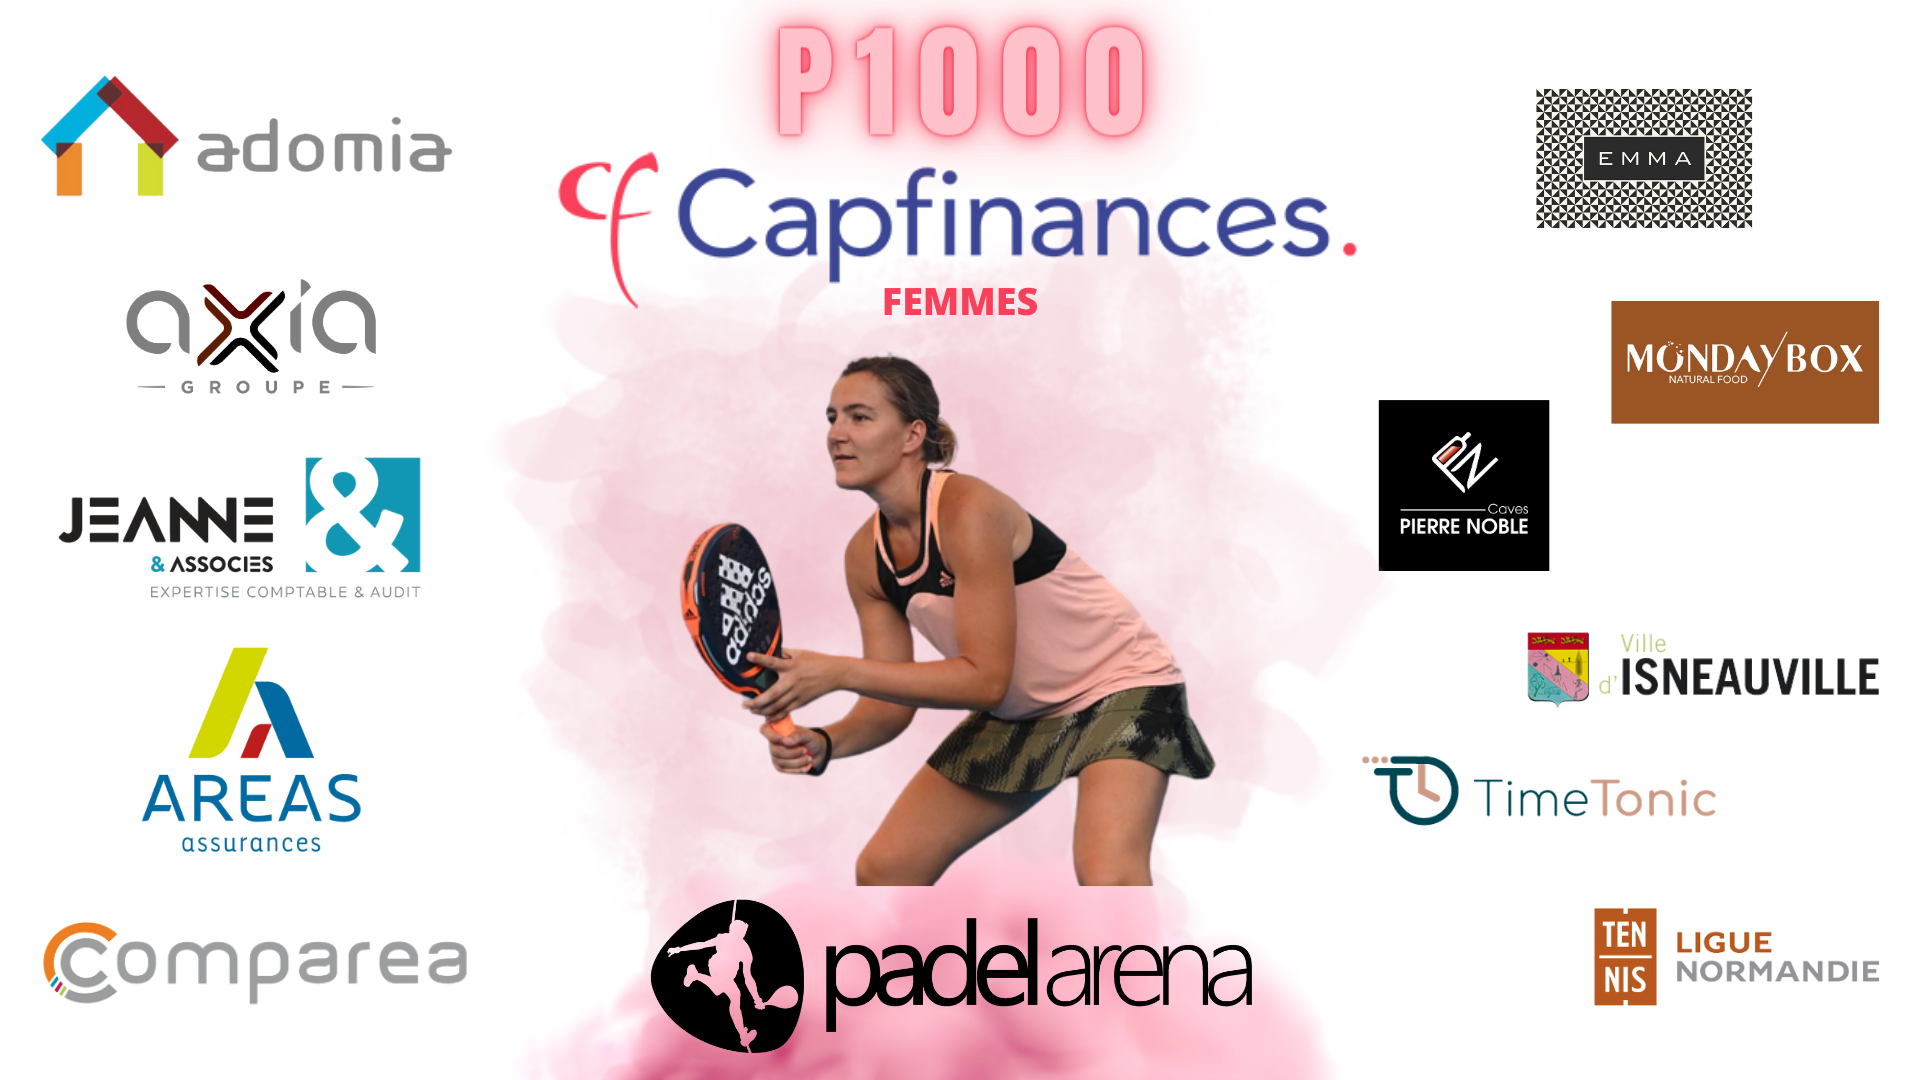 P1000 Open Cap Finance - Padel Arena – Taules i programació